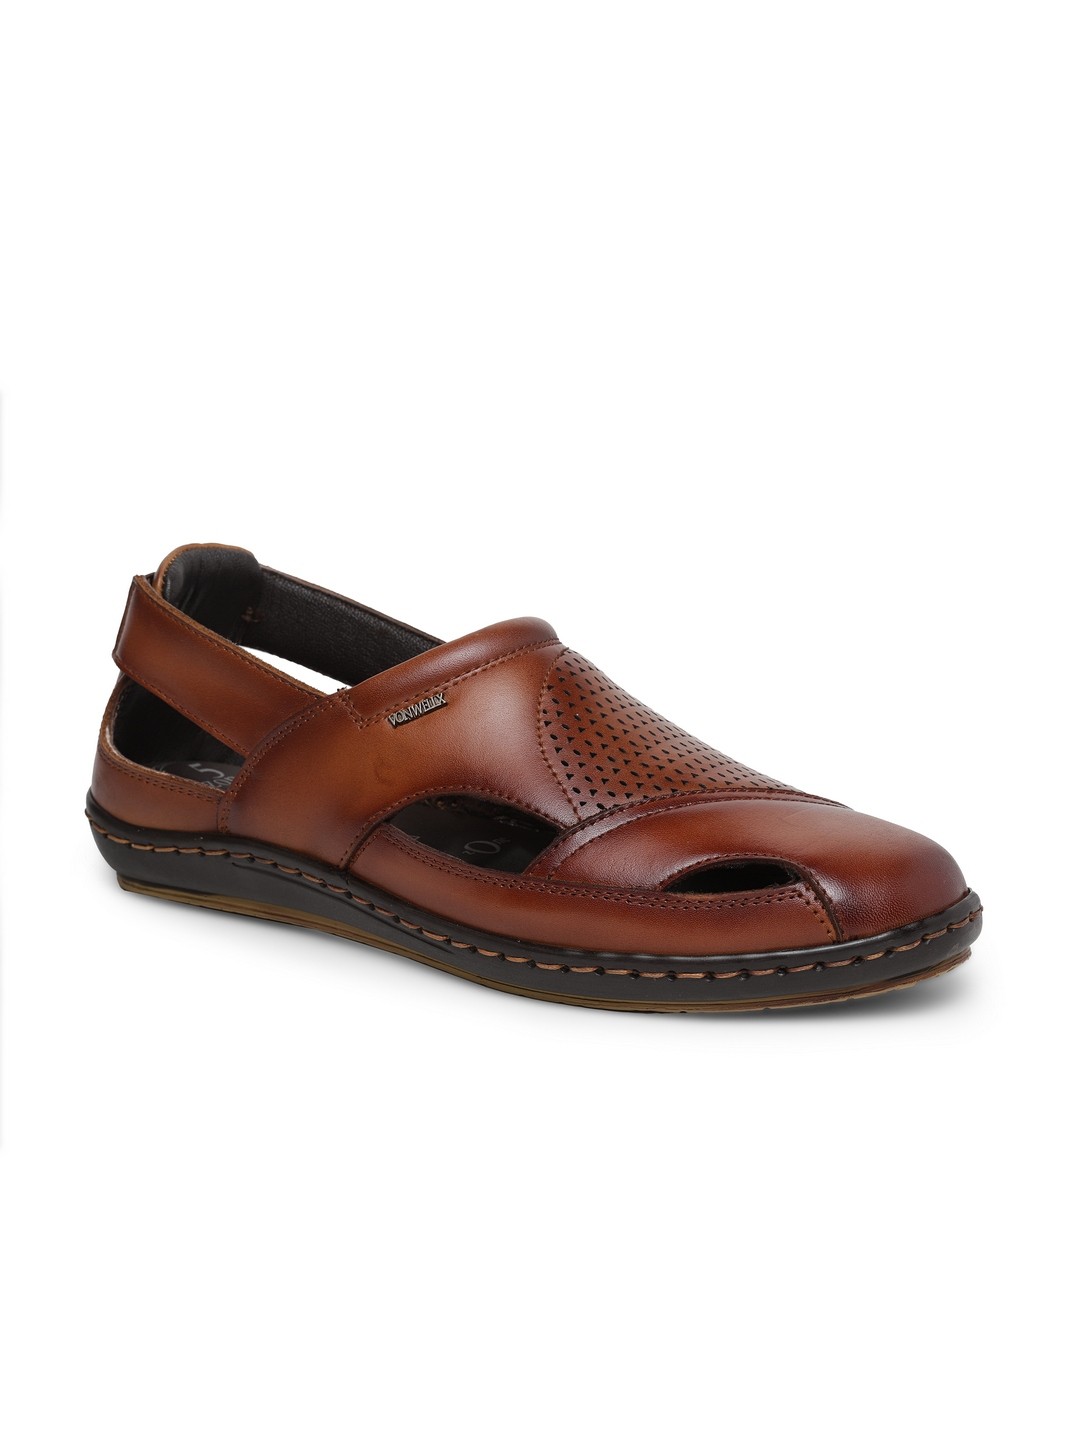 Buy Von Wellx Germany Comfort Men's Tan Sandal Eddie Online in Jaipur